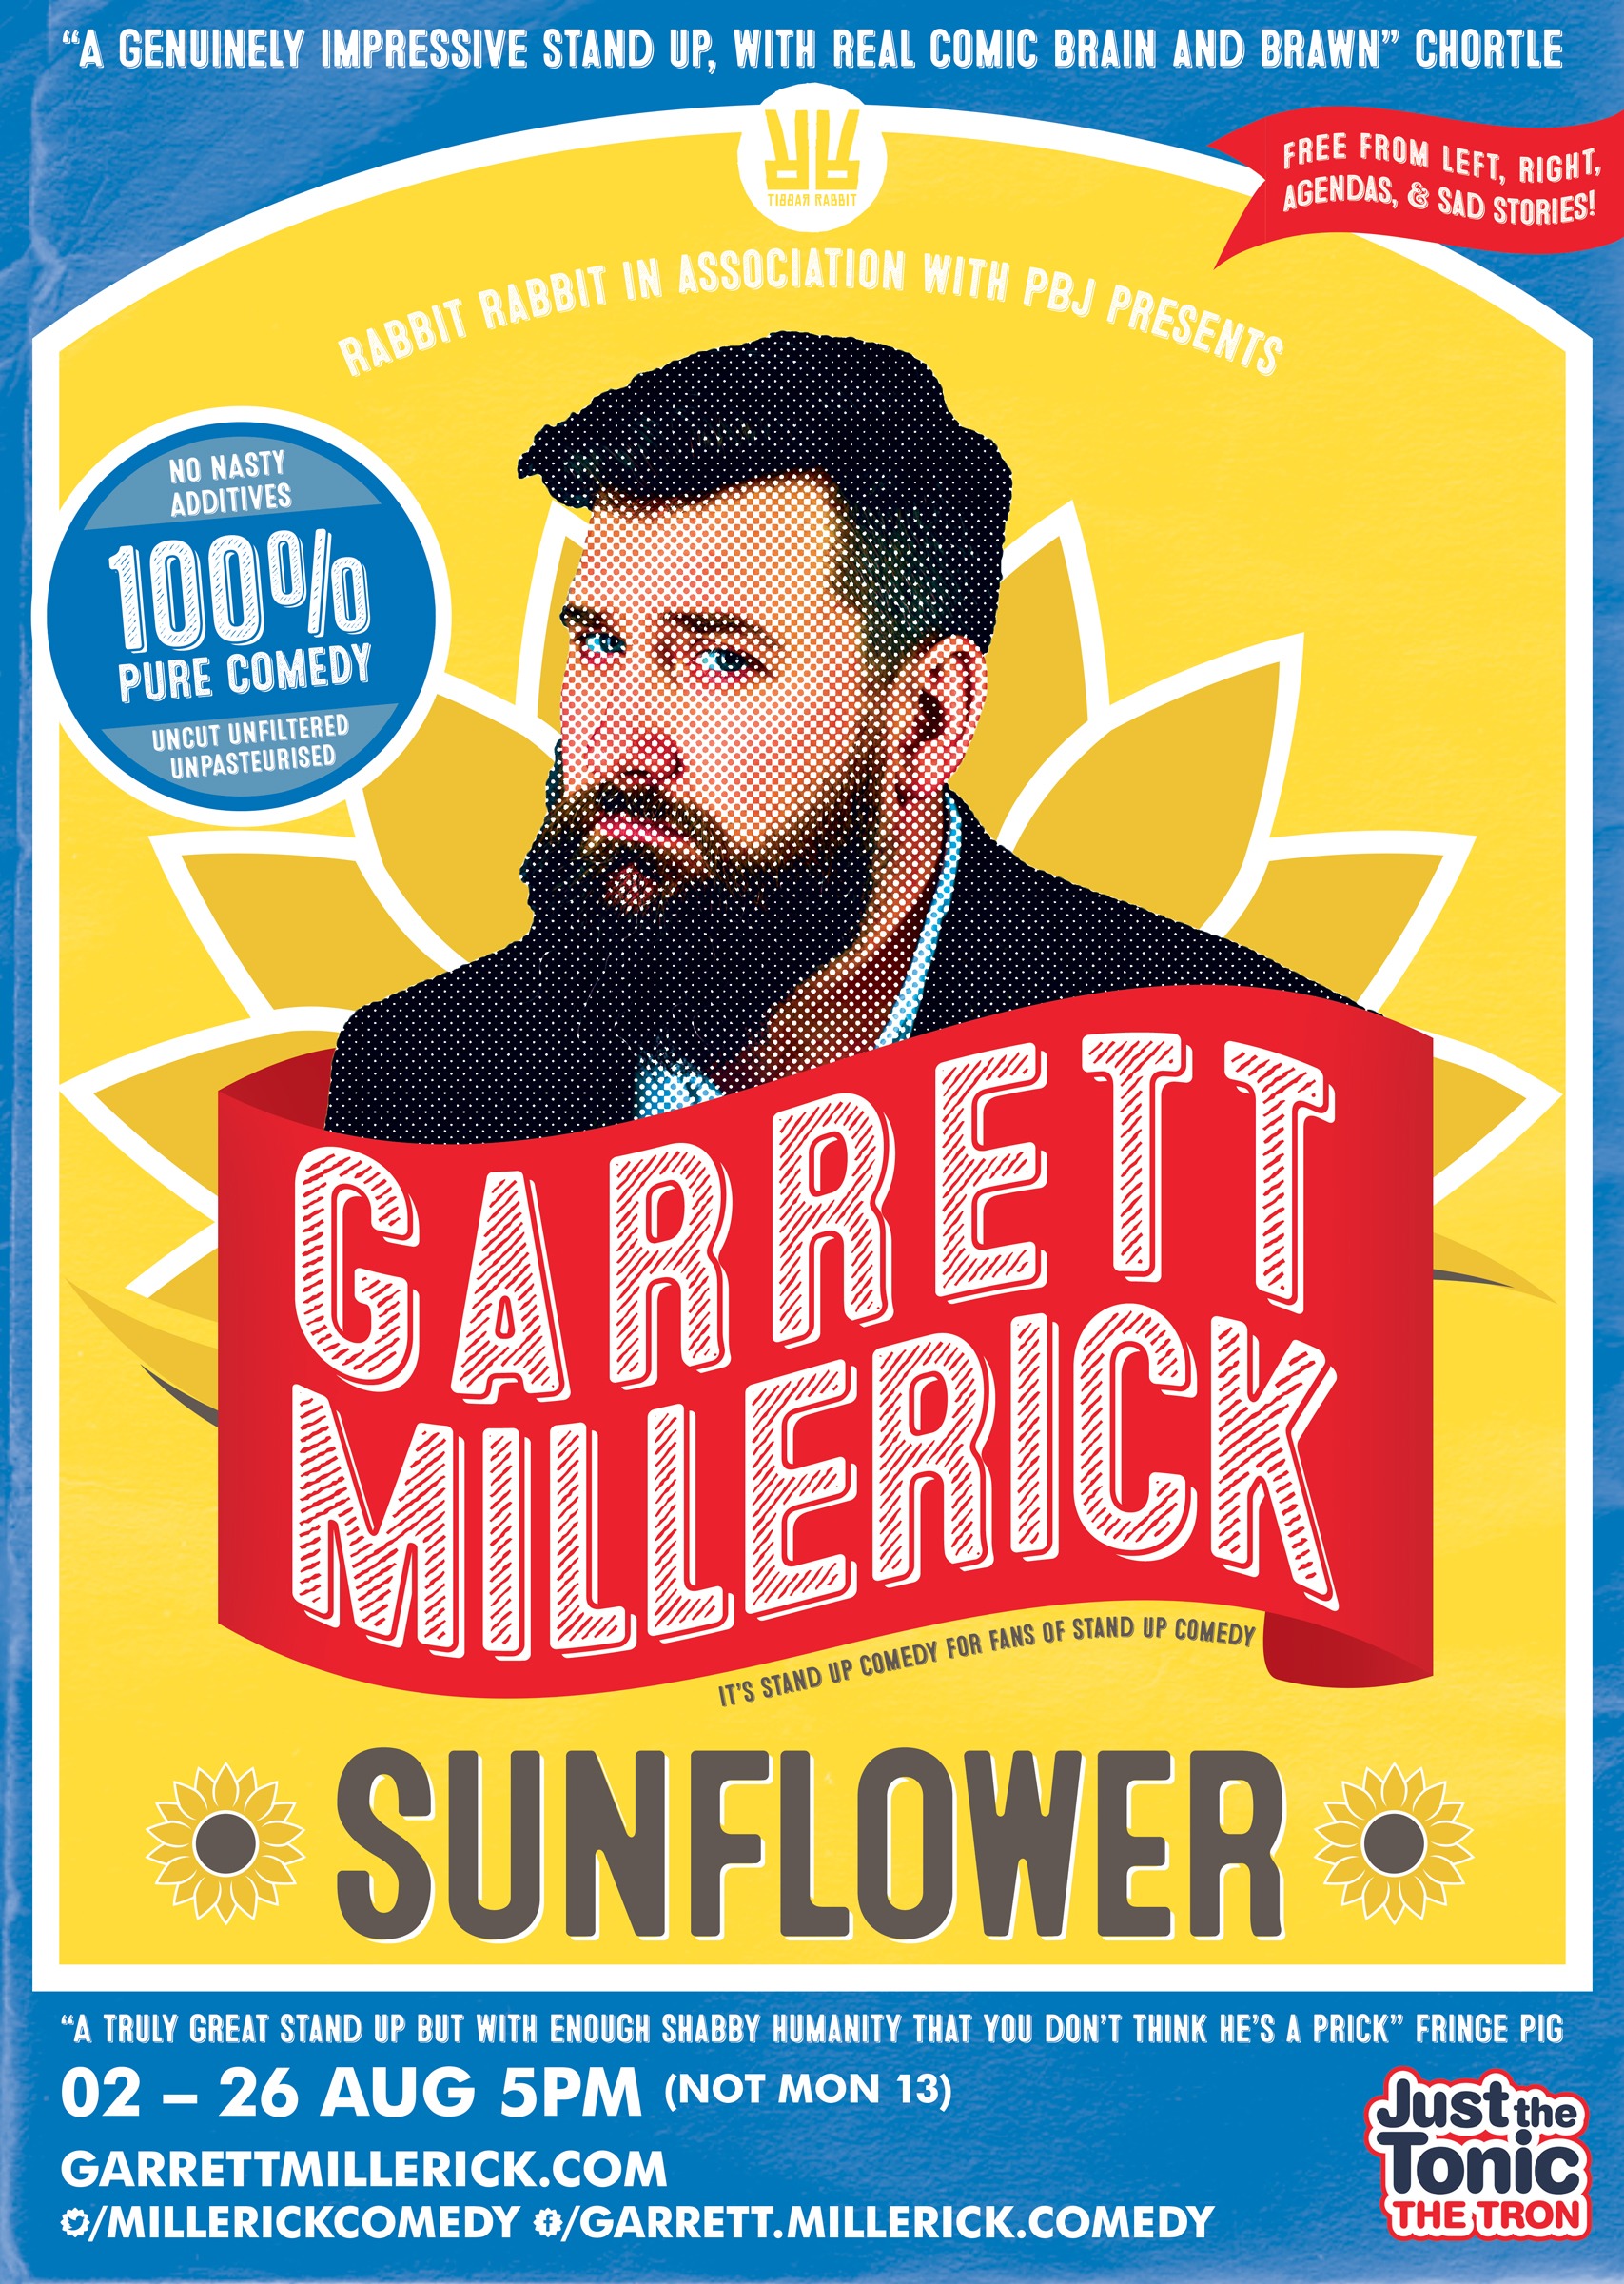 The poster for Garrett Millerick: Sunflower